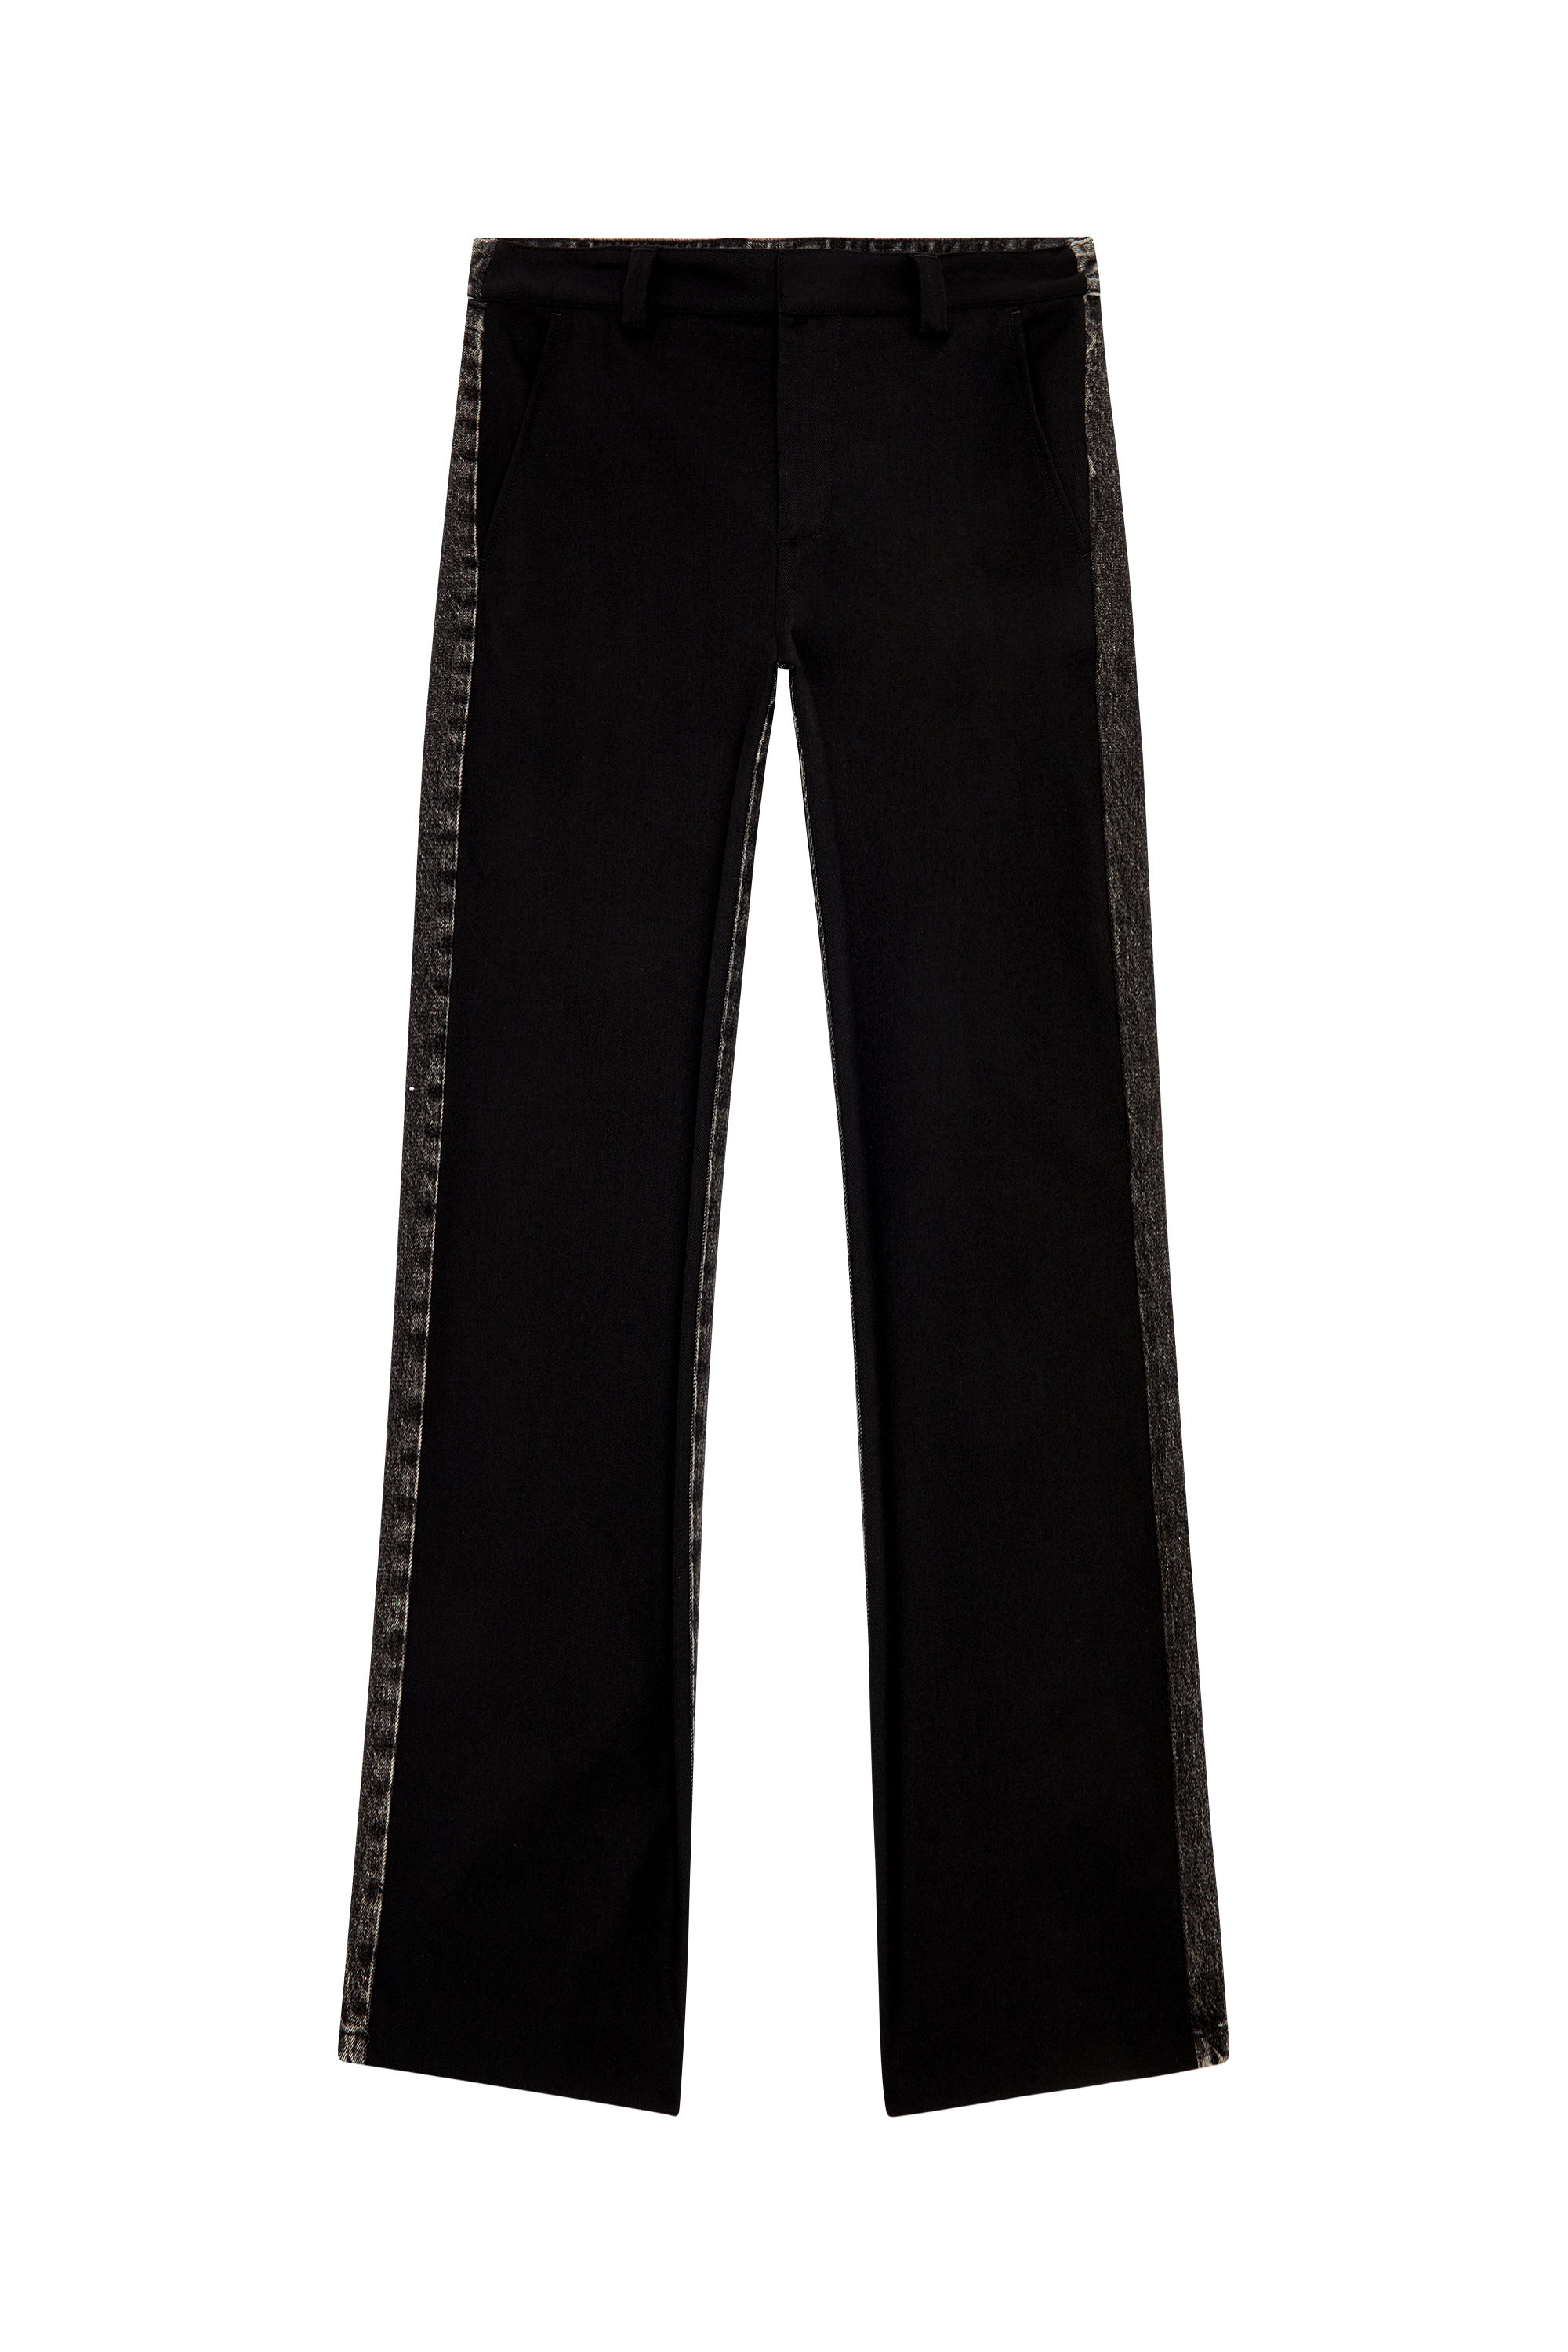 Diesel - P-WIRE-A, Man Hybrid pants in cool wool and denim in Black - Image 3